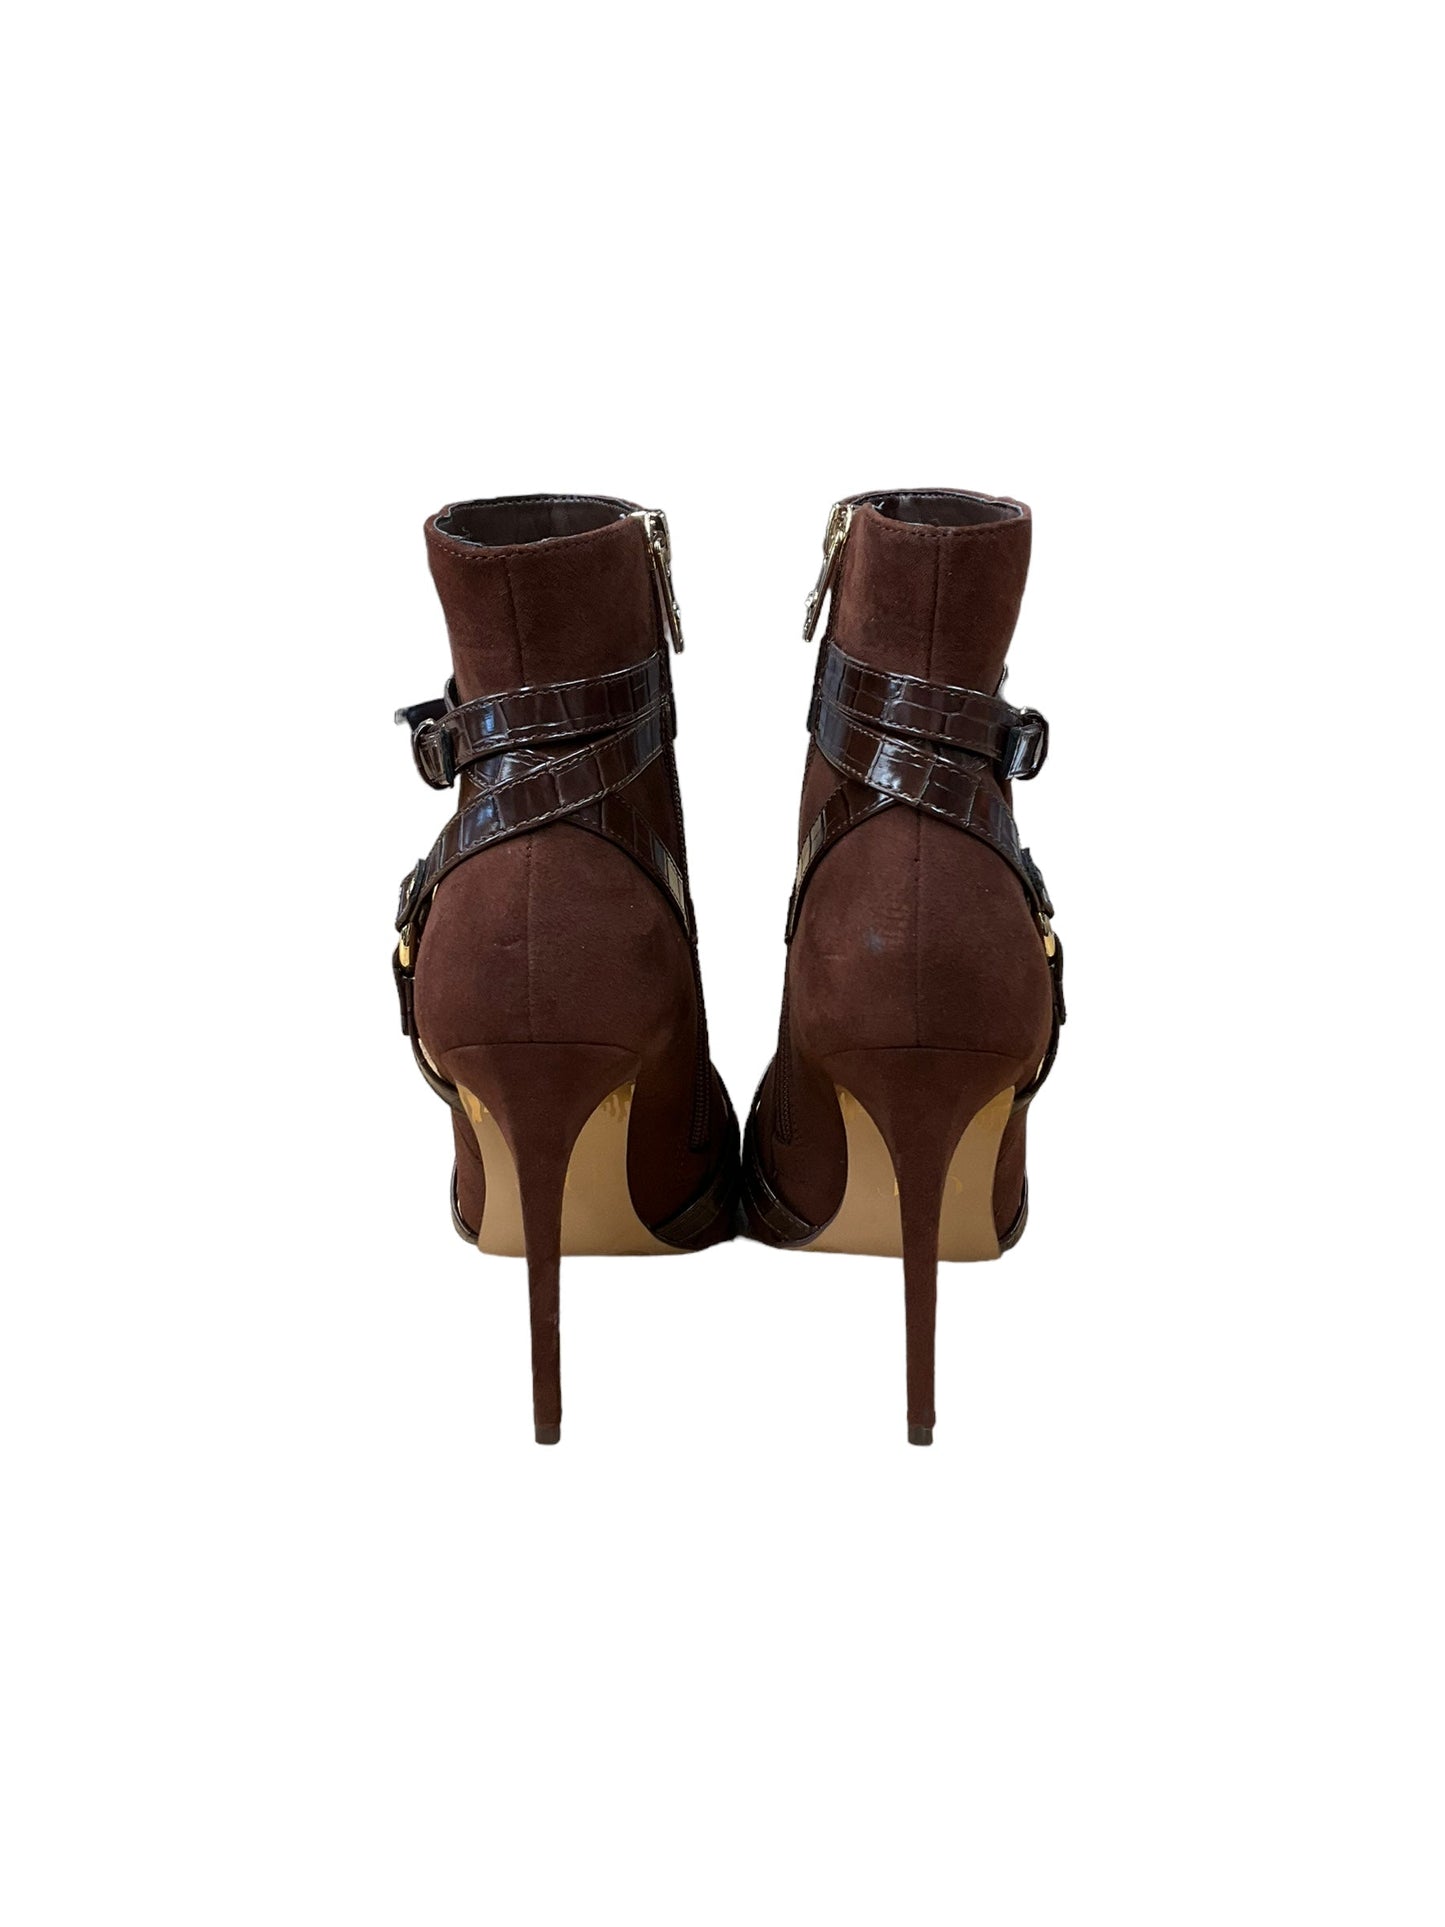 Boots Ankle Heels By Jennifer Lopez  Size: 6.5